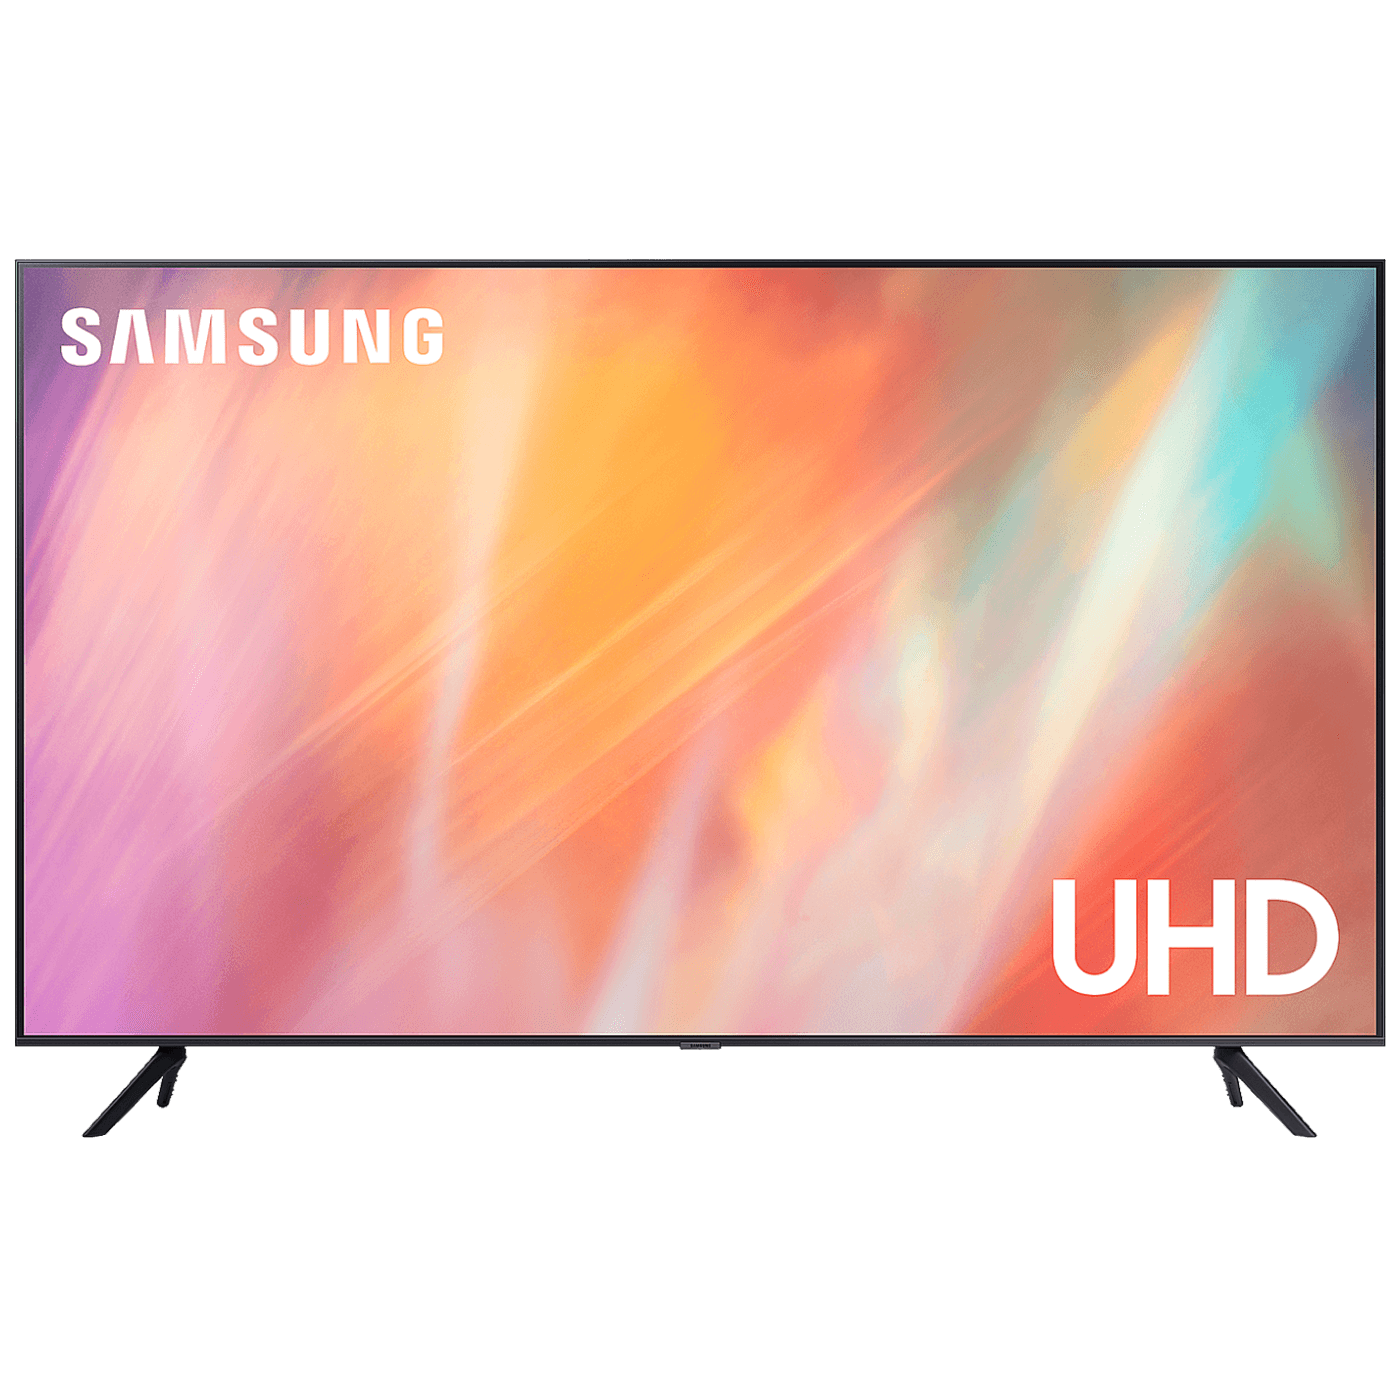 Samsung TV - Smart 4K LED TV 65